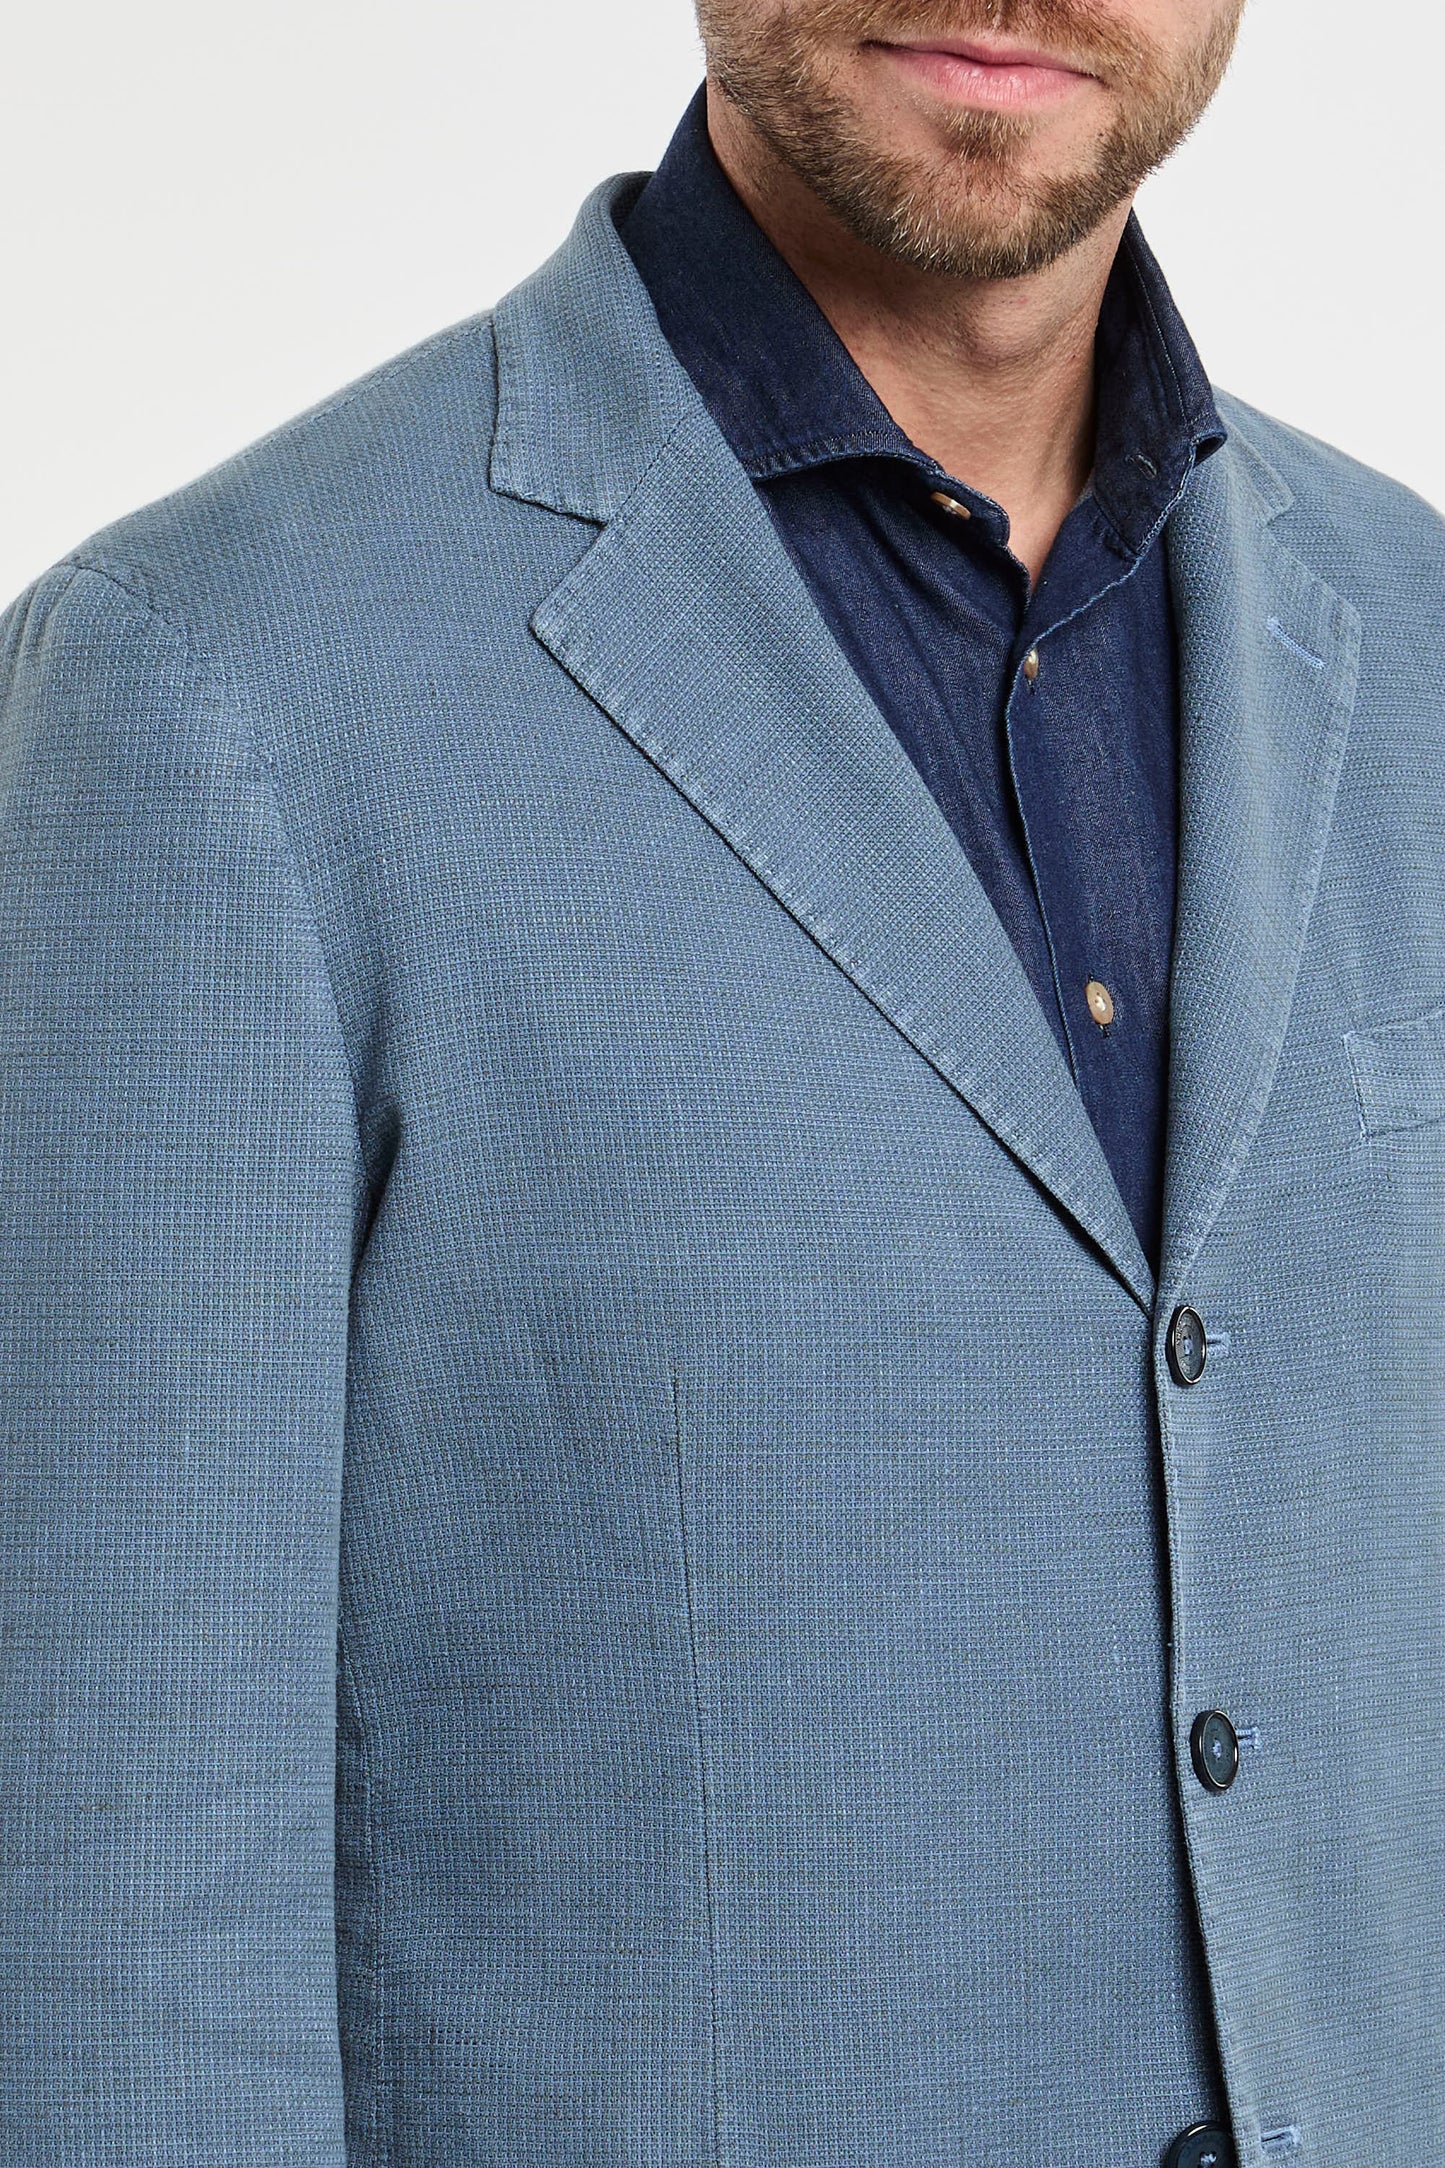  Santaniello Multicolor Jacket In Cotton/linen Blend Azzurro Uomo - 3